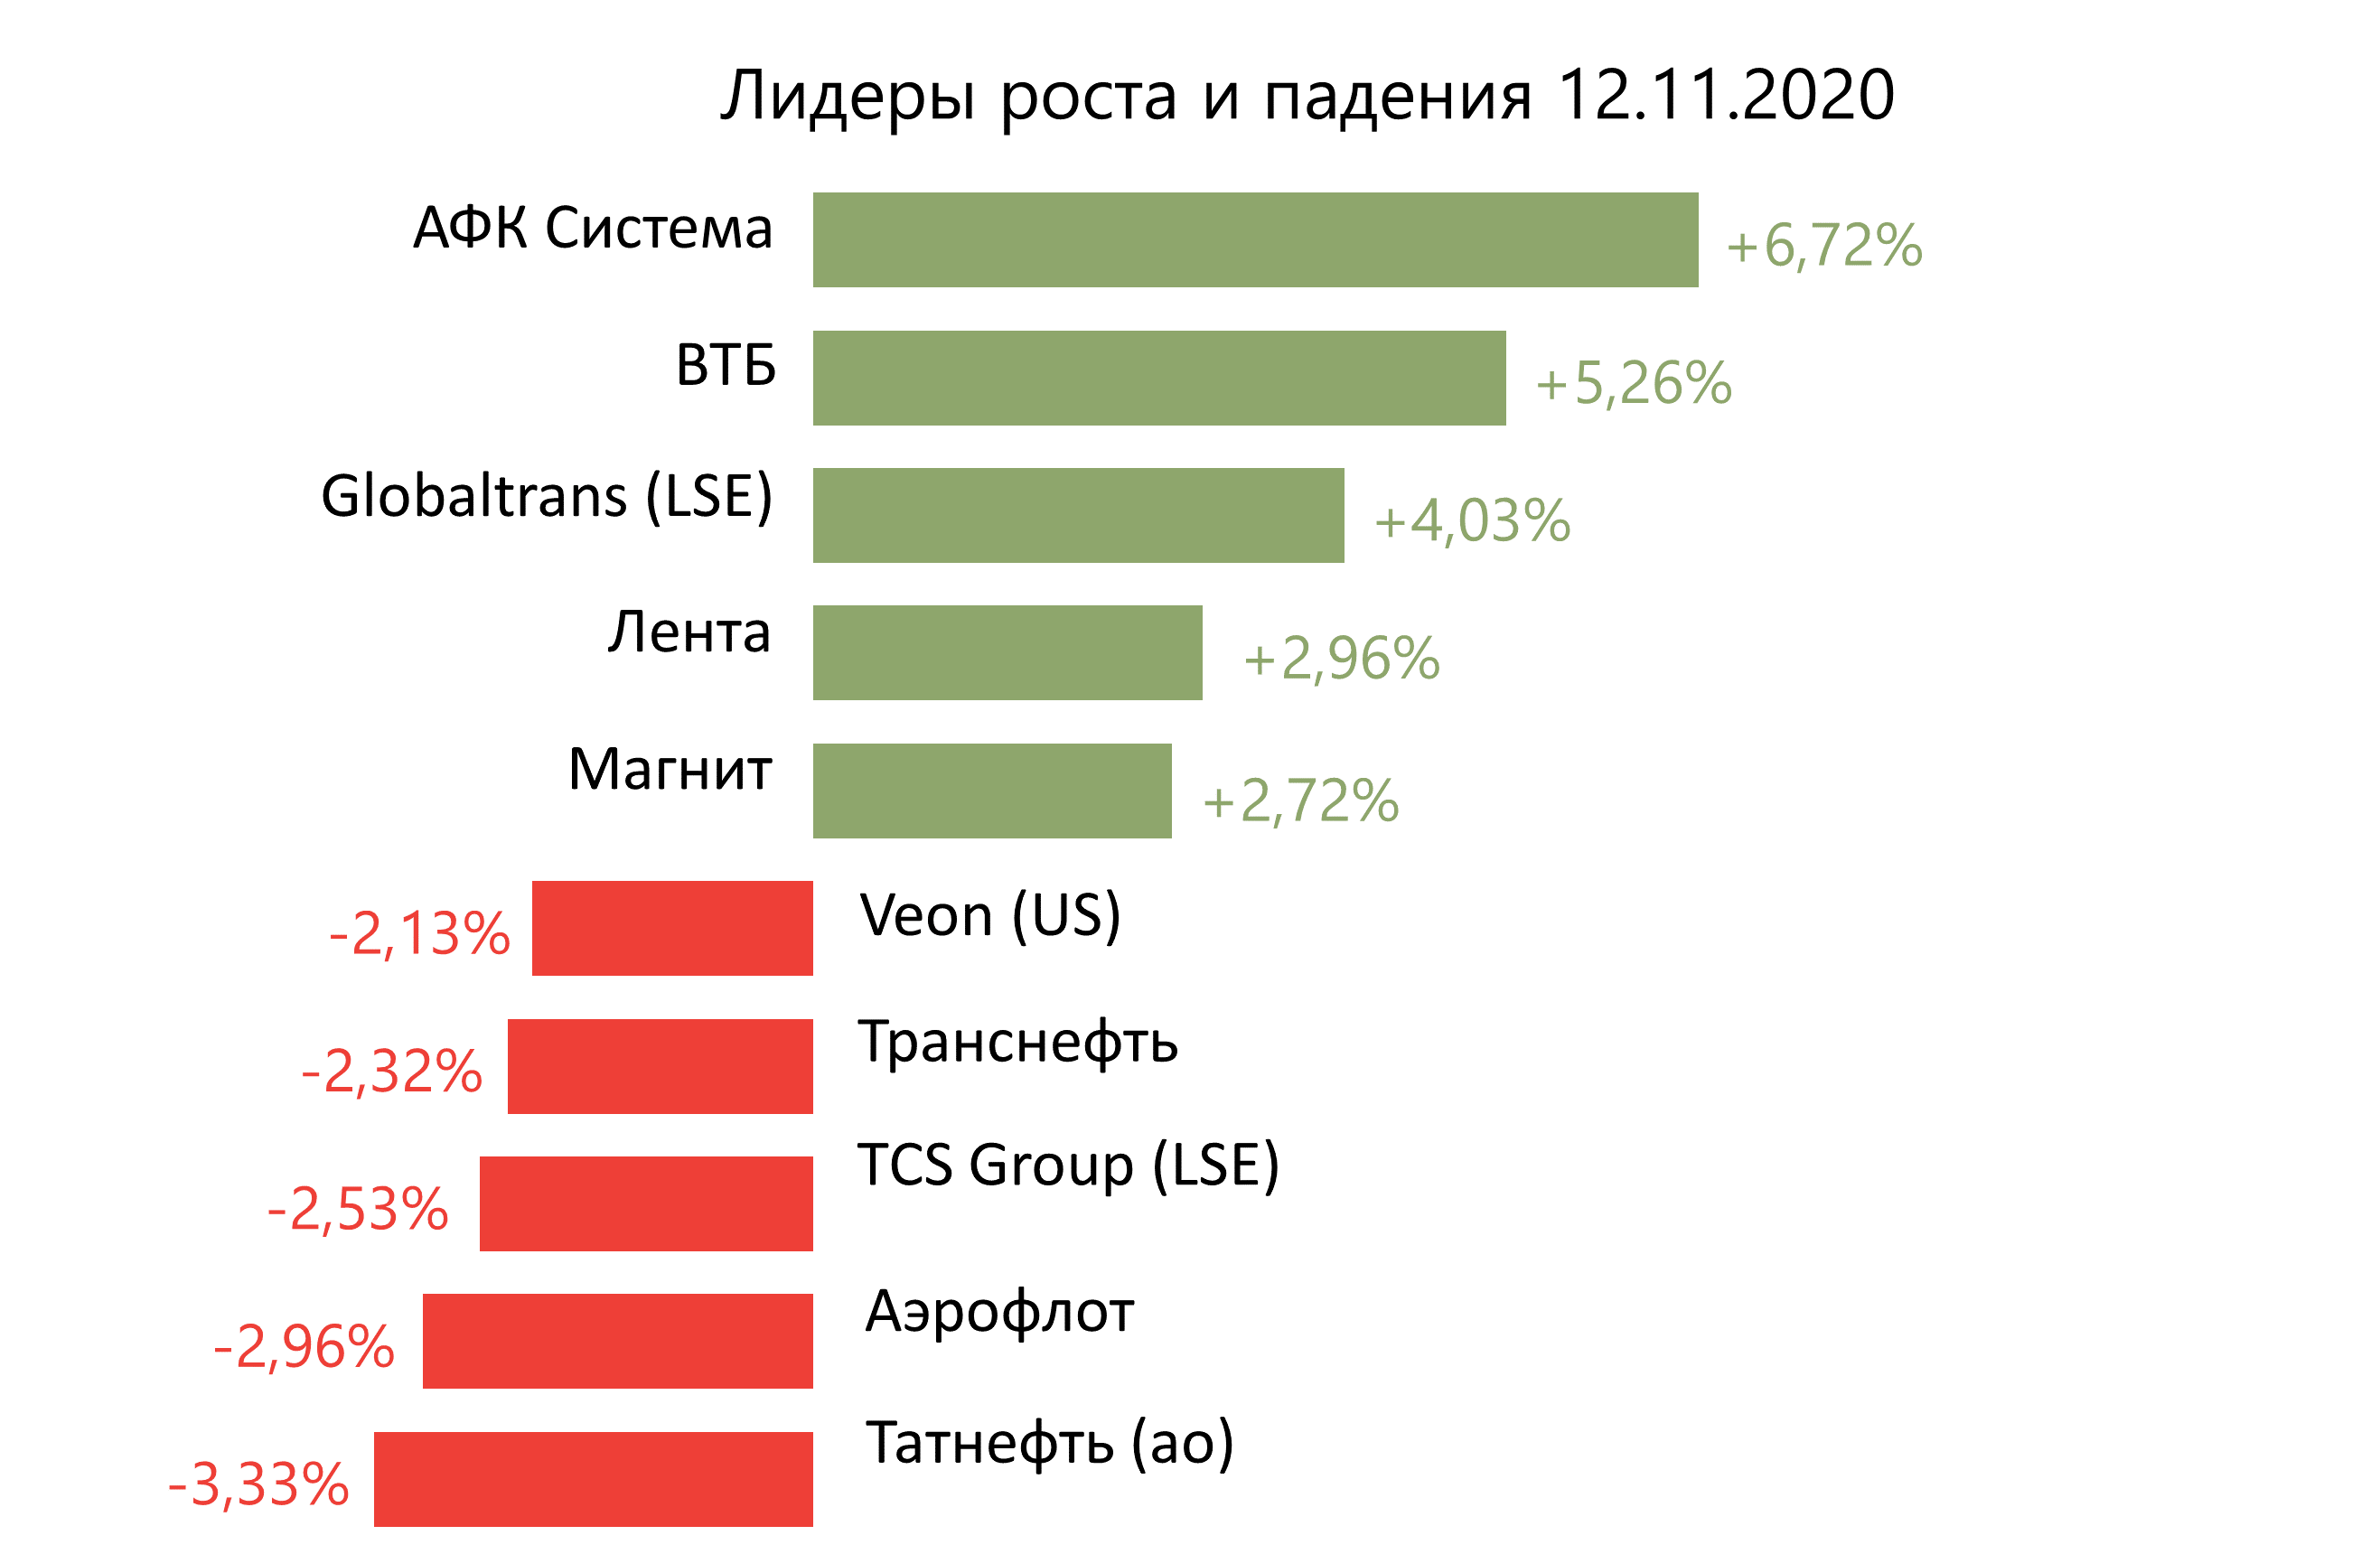 Лидеры роста и падения российского рынка на 12 ноября